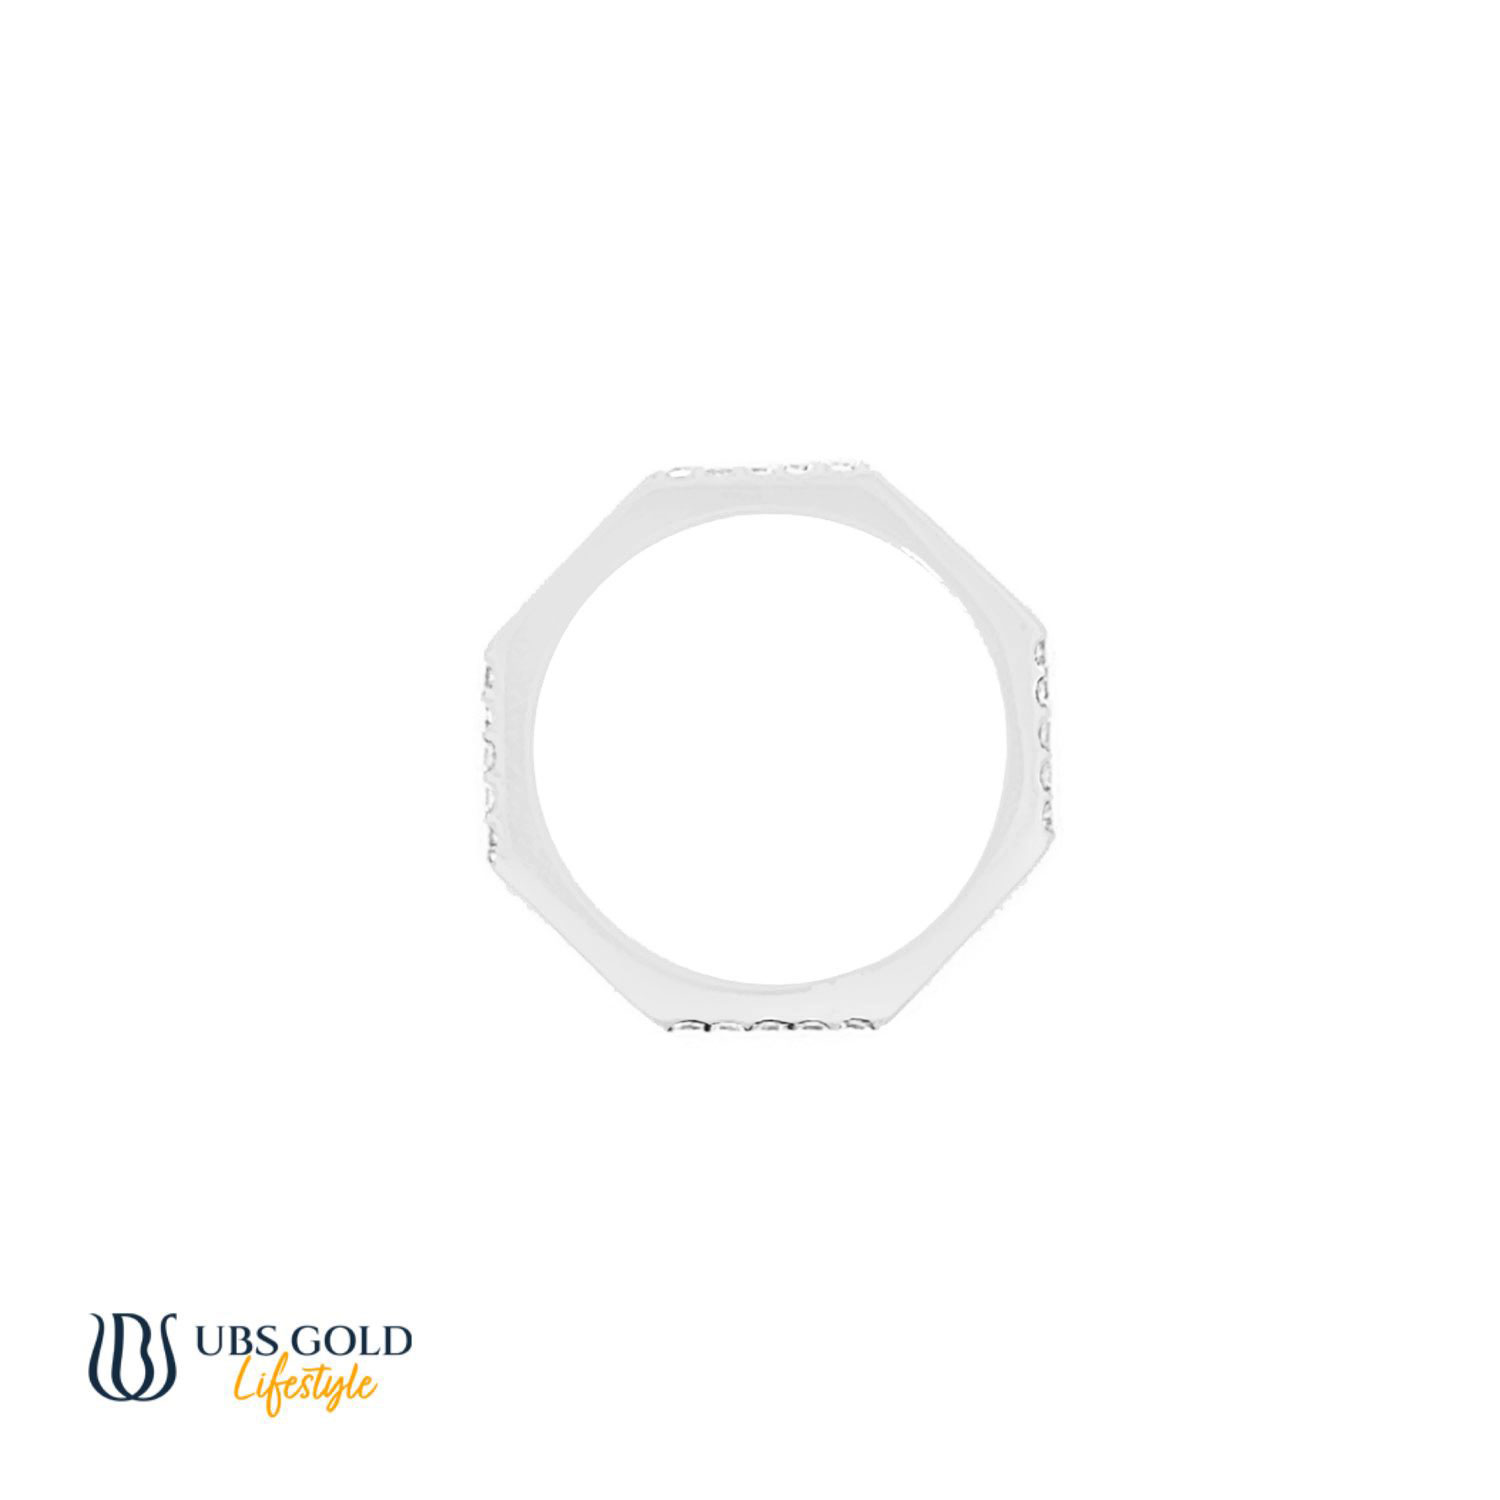 UBS Gold Cincin Emas - Cc16871 - 17K